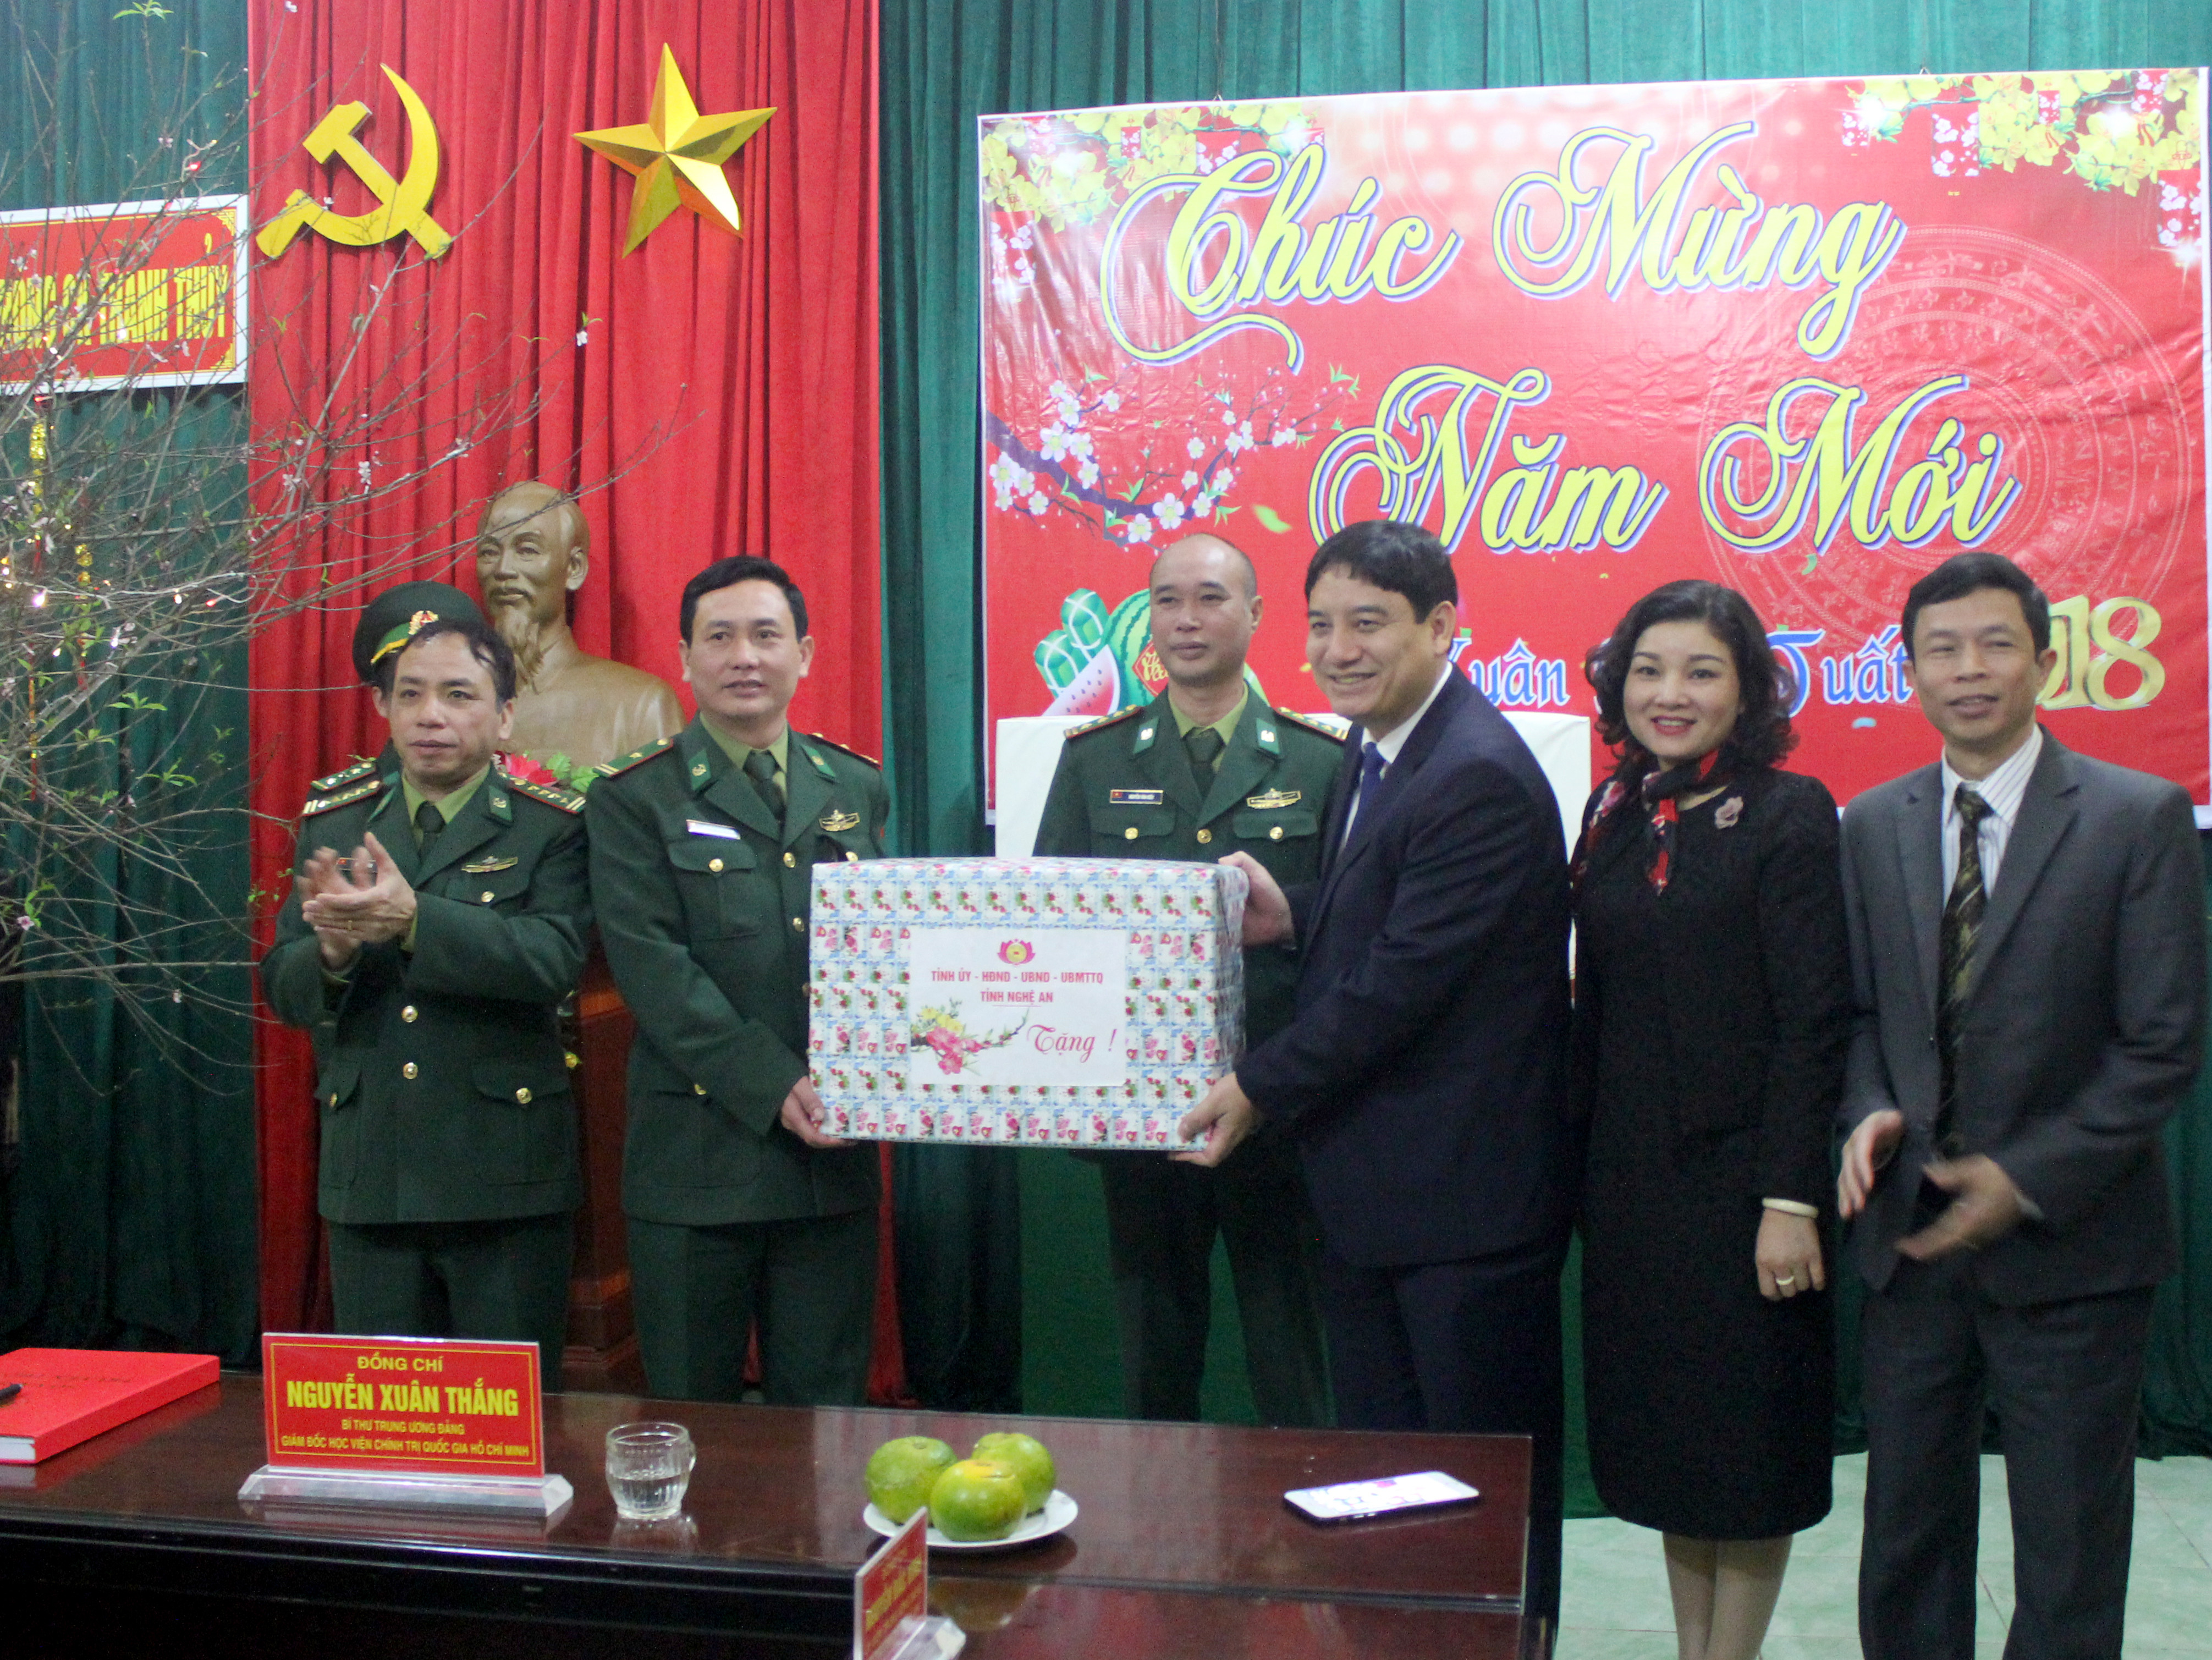 Bí thư Tỉnh ủy Nguyễn Đắc Vinh tặng quà cho các cán bộ, chiến sỹ Đồn Biên phòng cửa khẩu Thanh Thủy. Ảnh: Mai Hoa